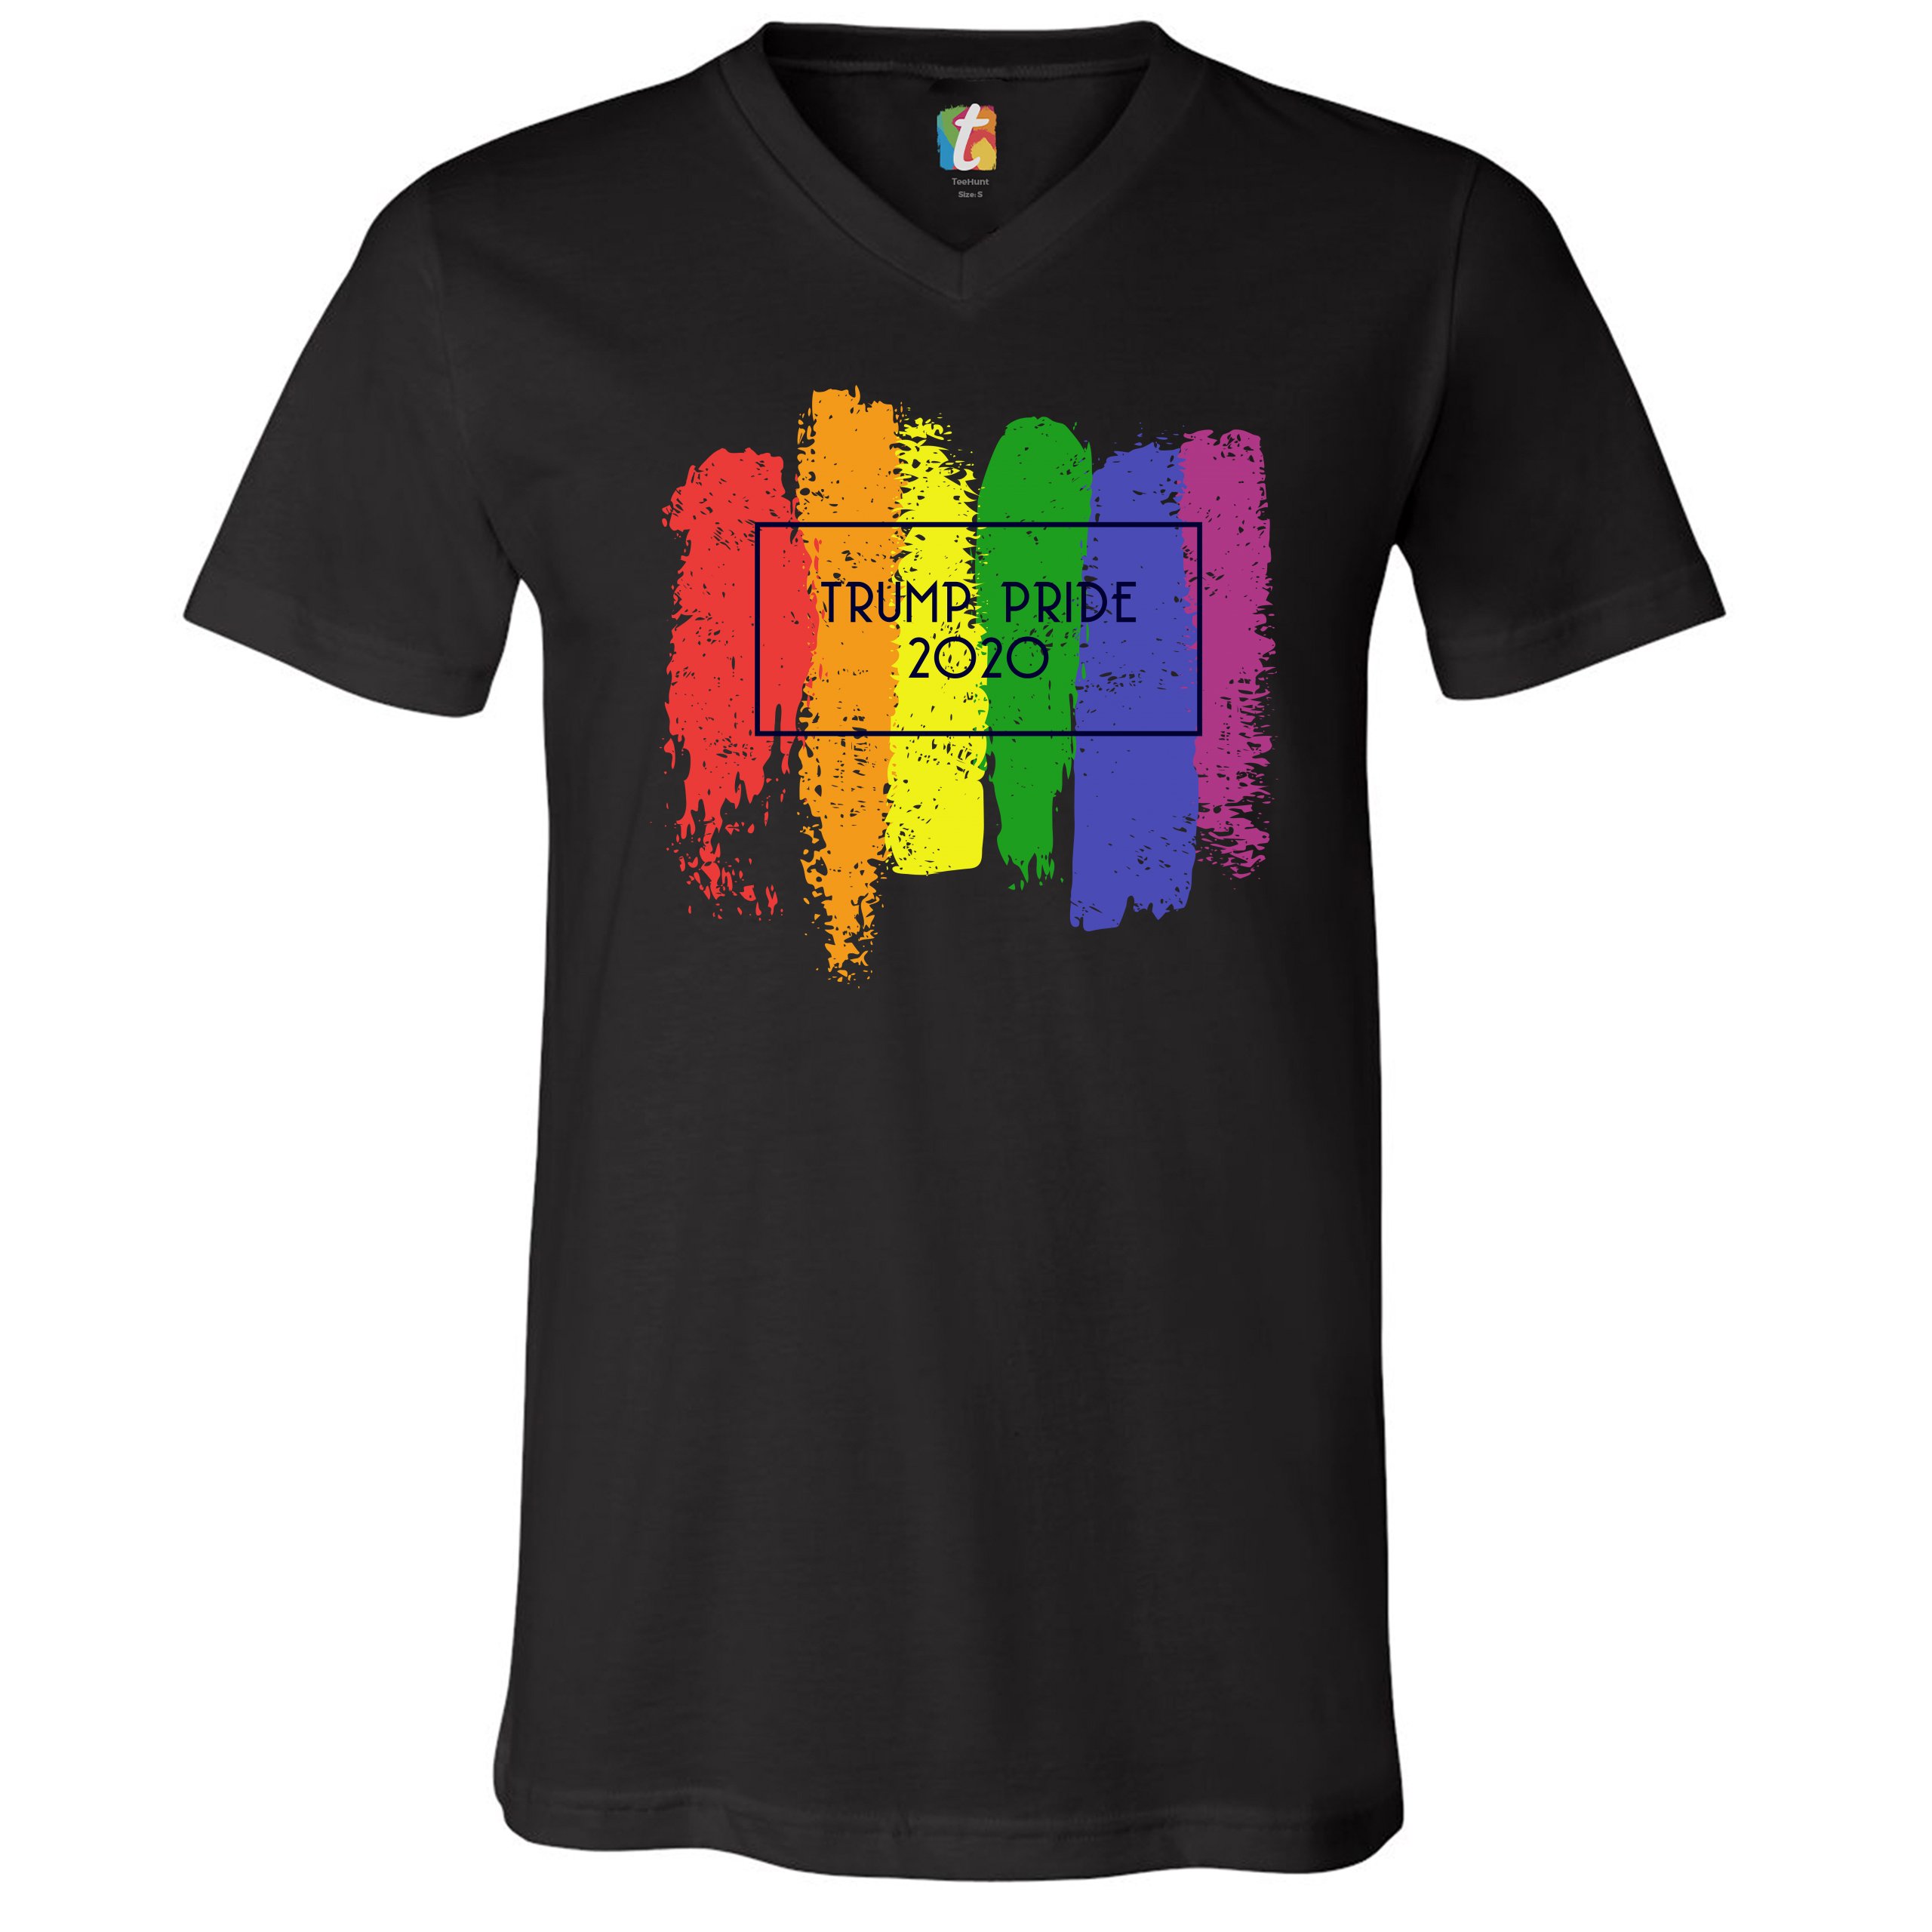 who sales gay pride shirts